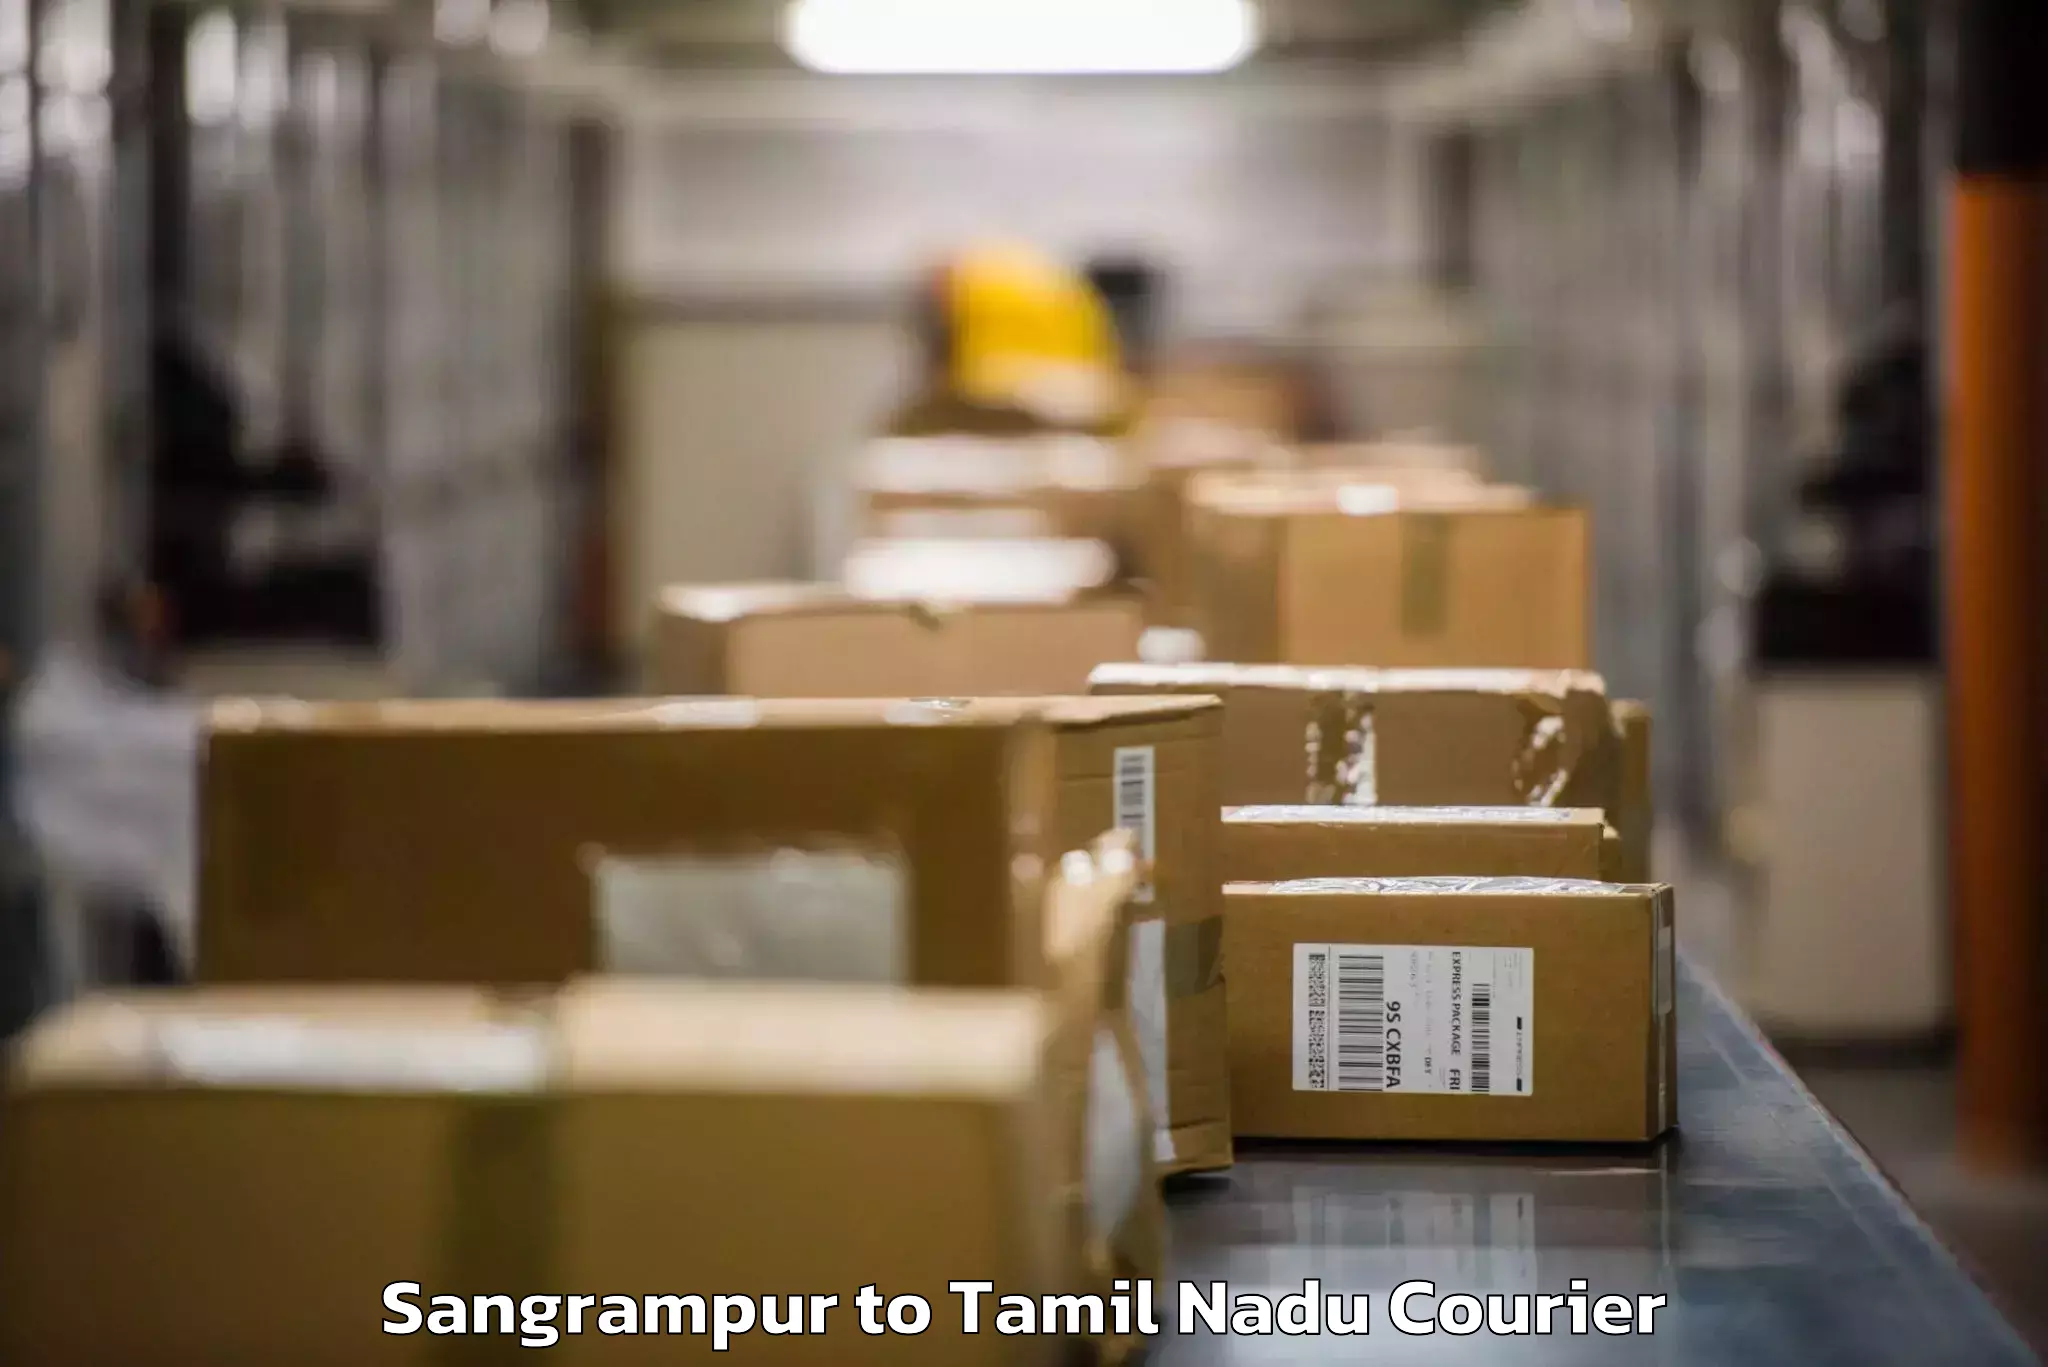 Baggage courier guide Sangrampur to Tiruturaipundi